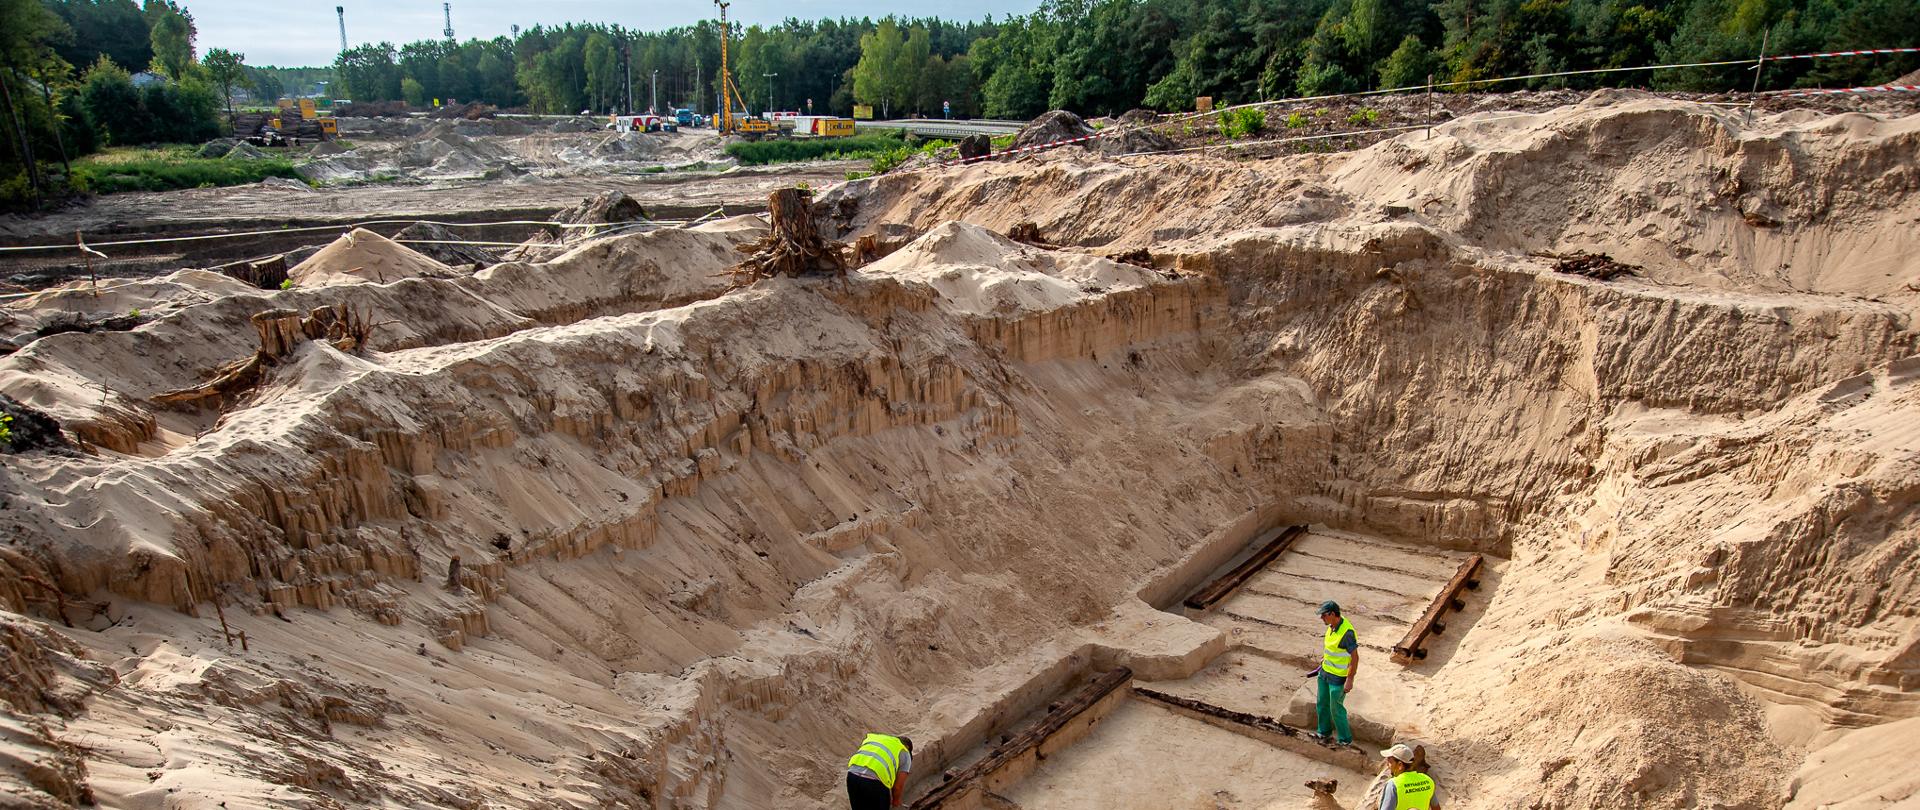 Prace archeologiczne w okolicy Wiązowny pod Warszawą, prowadzone przed rozpoczęciem budowy S17 Lubelska - Kołbiel